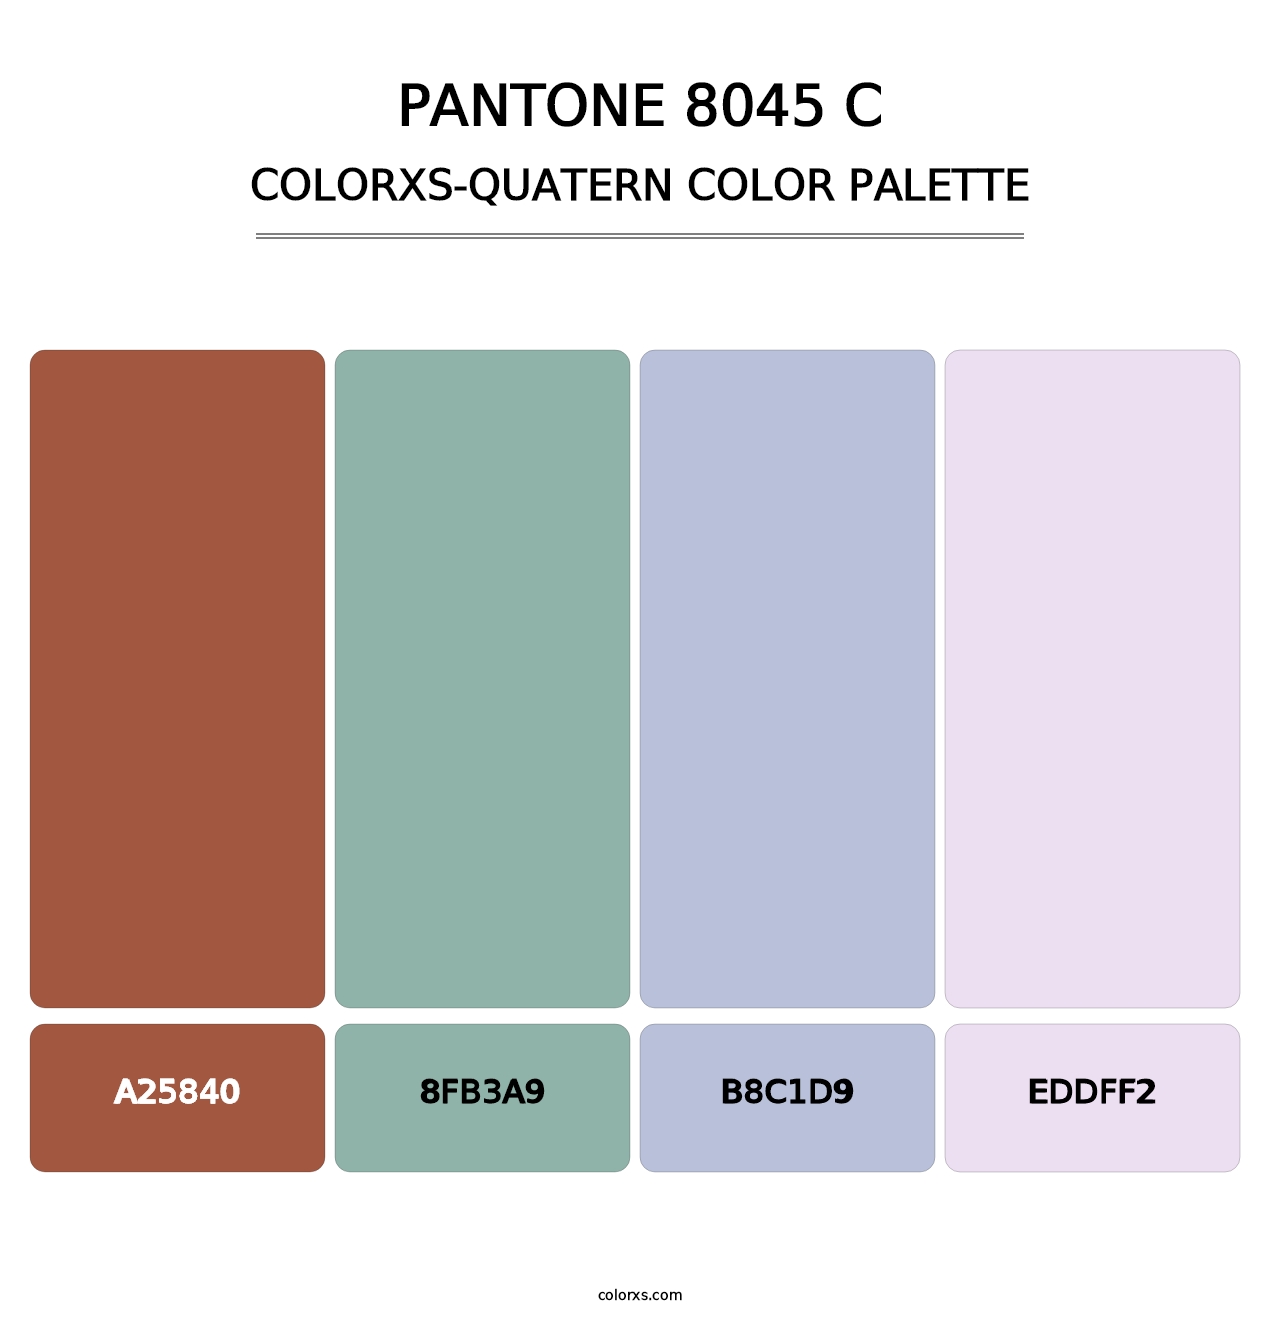 PANTONE 8045 C - Colorxs Quatern Palette